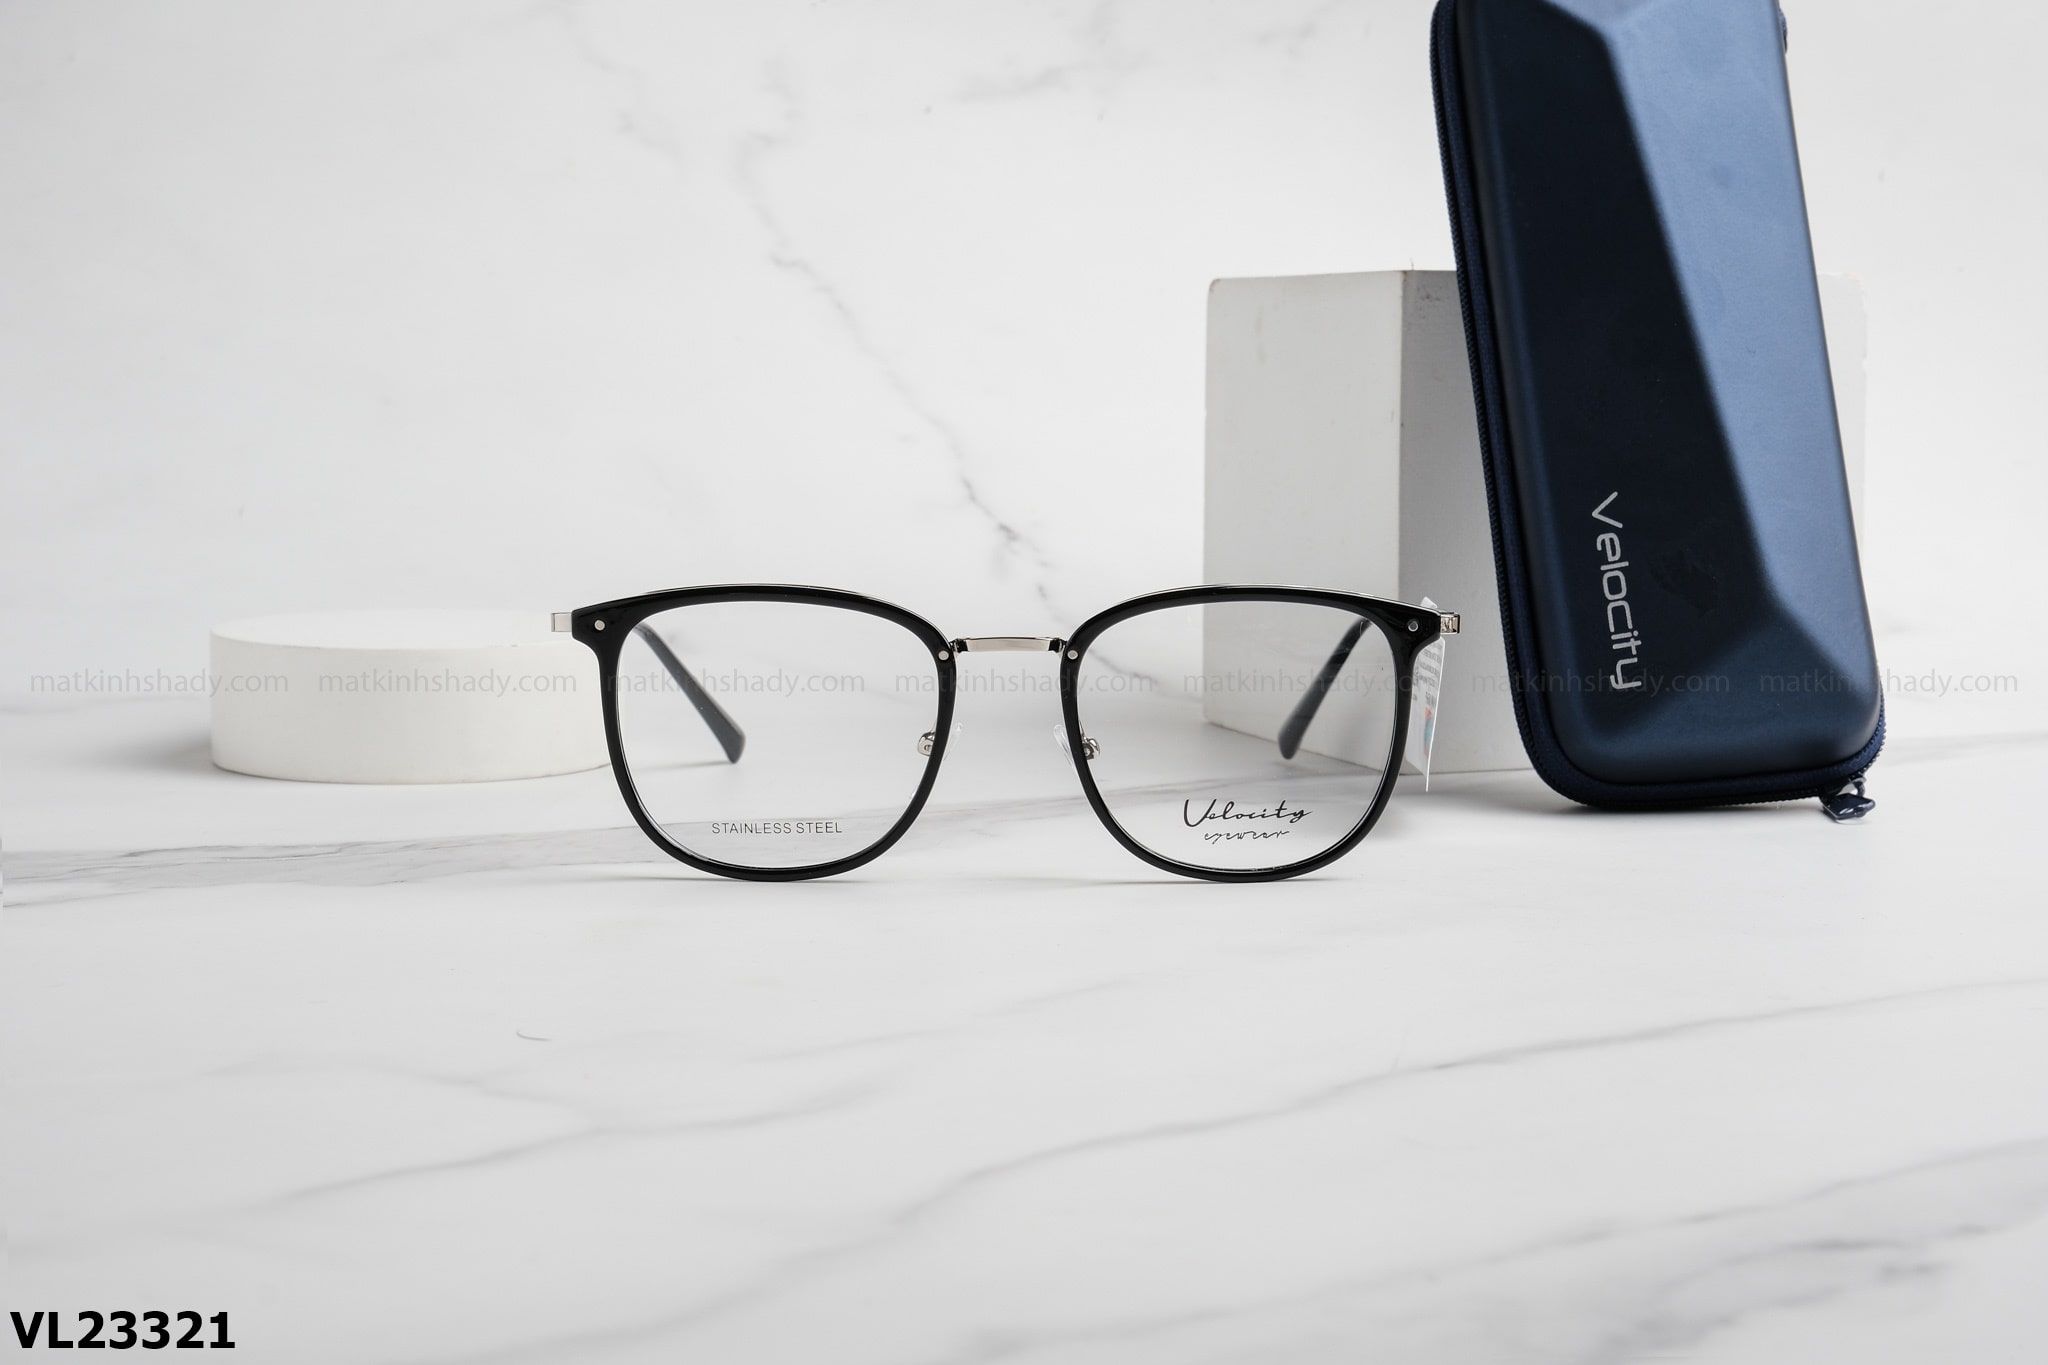  Velocity Eyewear - Glasses - VL23321 